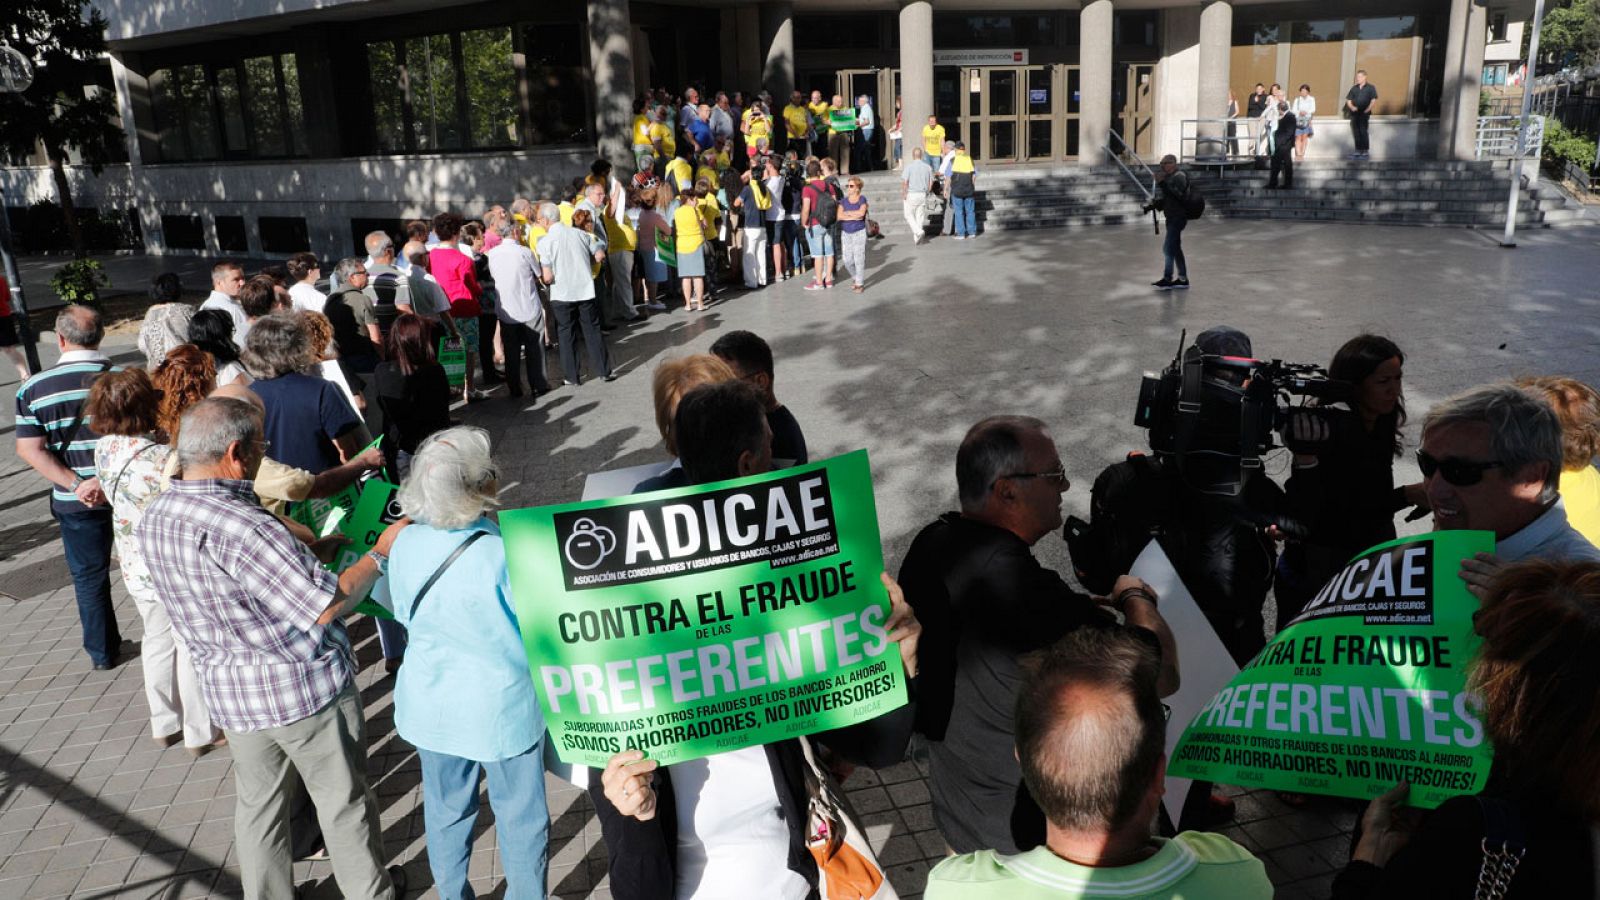 Afectados por las preferentes de Caja Madrid haciendo cola para entrar en el juicio en julio